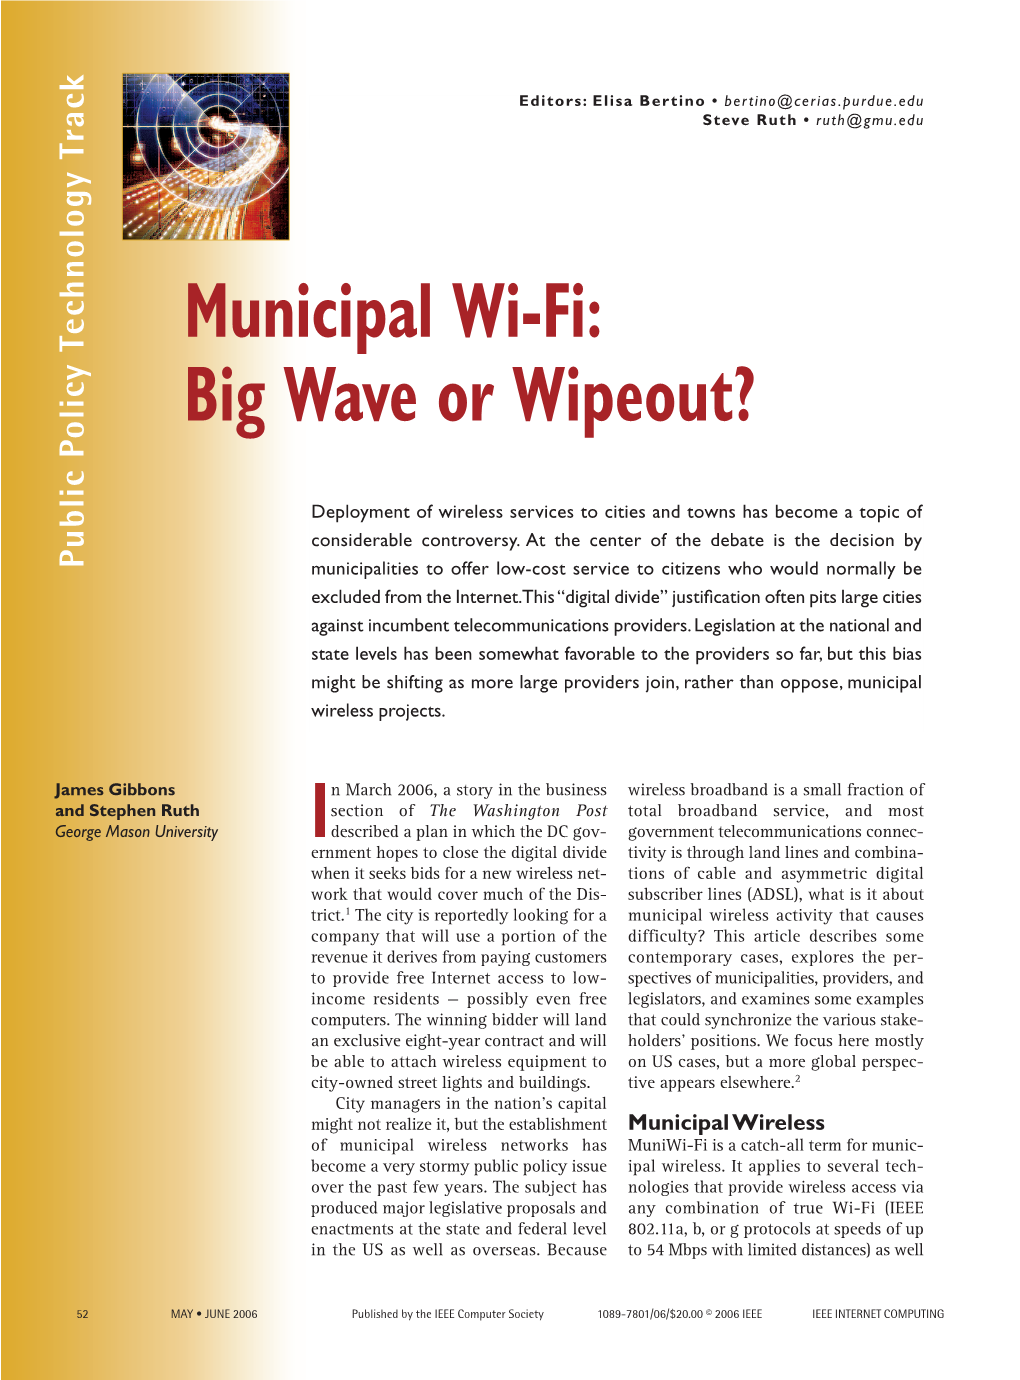 Municipal Wi-Fi: Big Wave Or Wipeout?